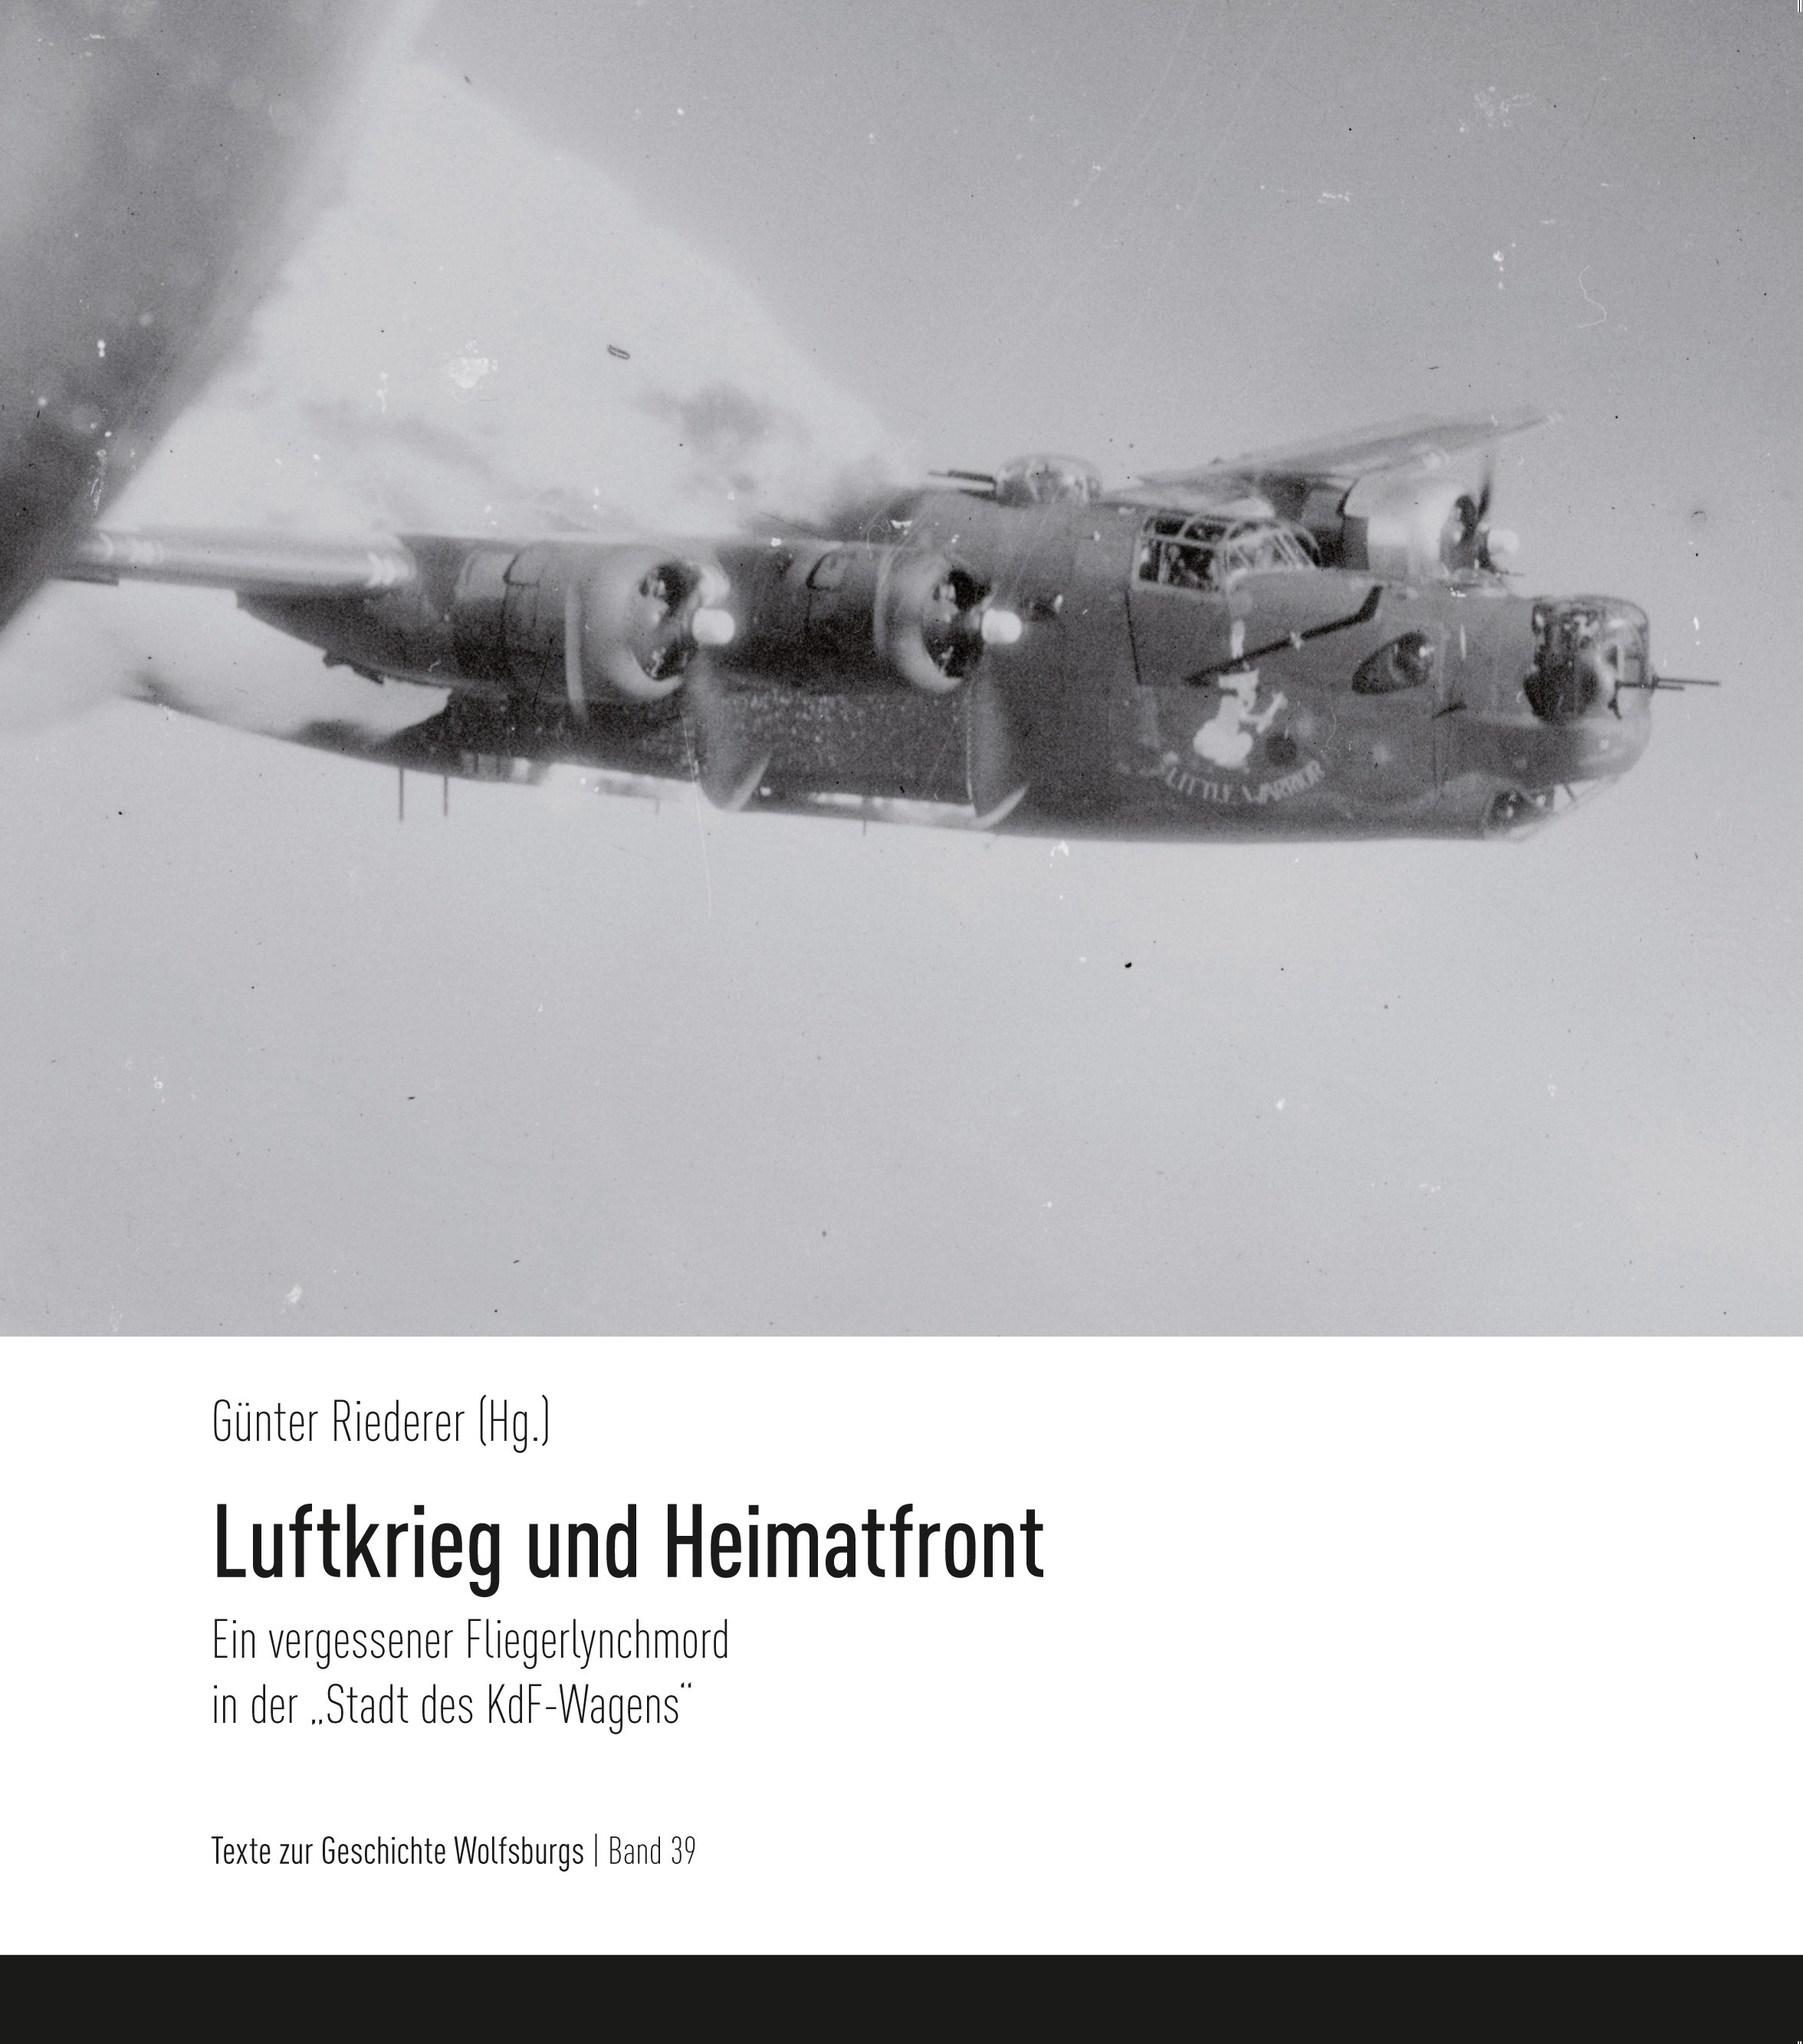 Coverbild eines Kampfflugzeugs der Publikation: Luftkrieg und Heimatfront